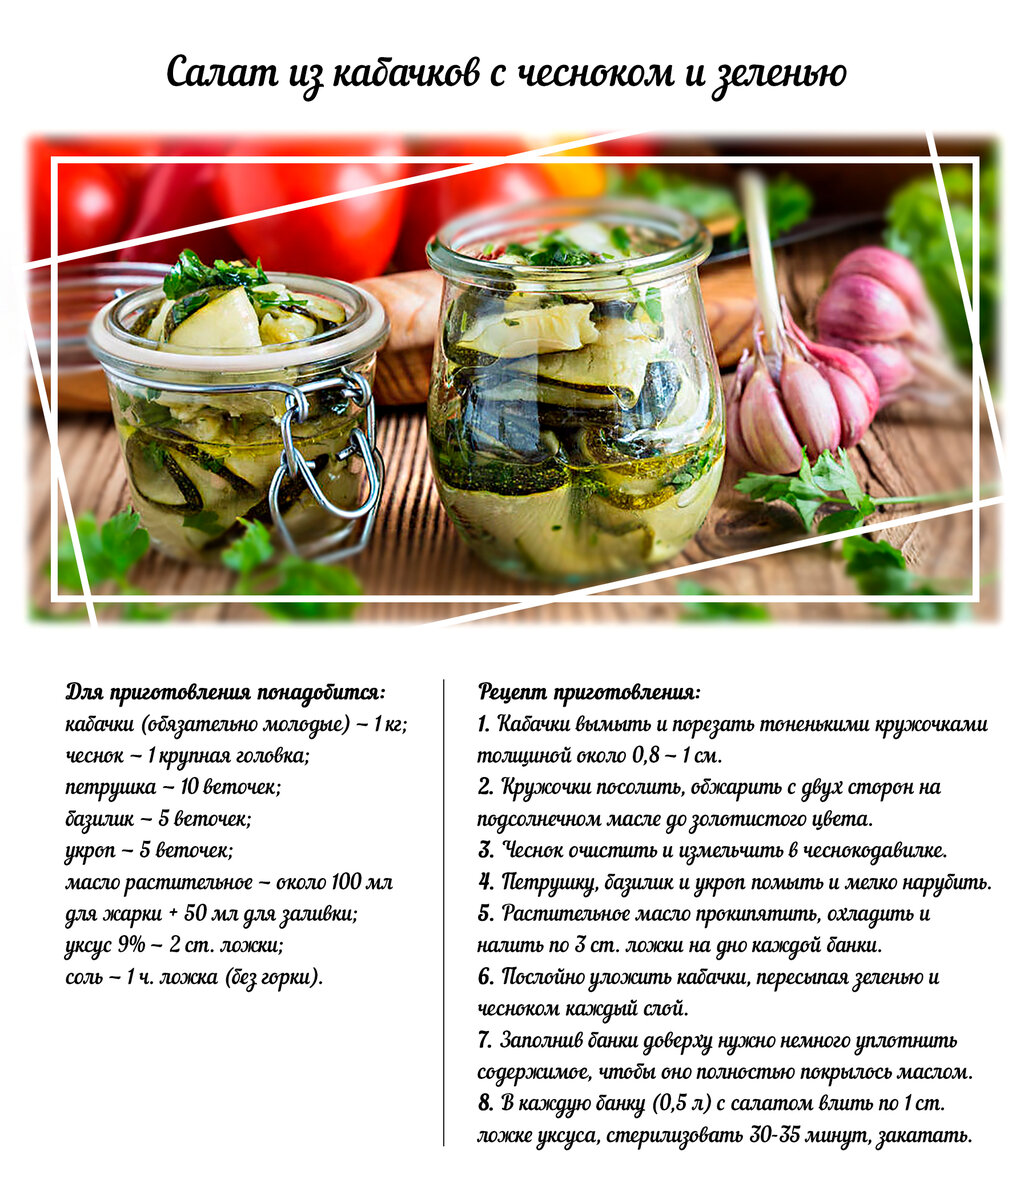 Салат из кабачков и капусты на зиму - способы консервирования